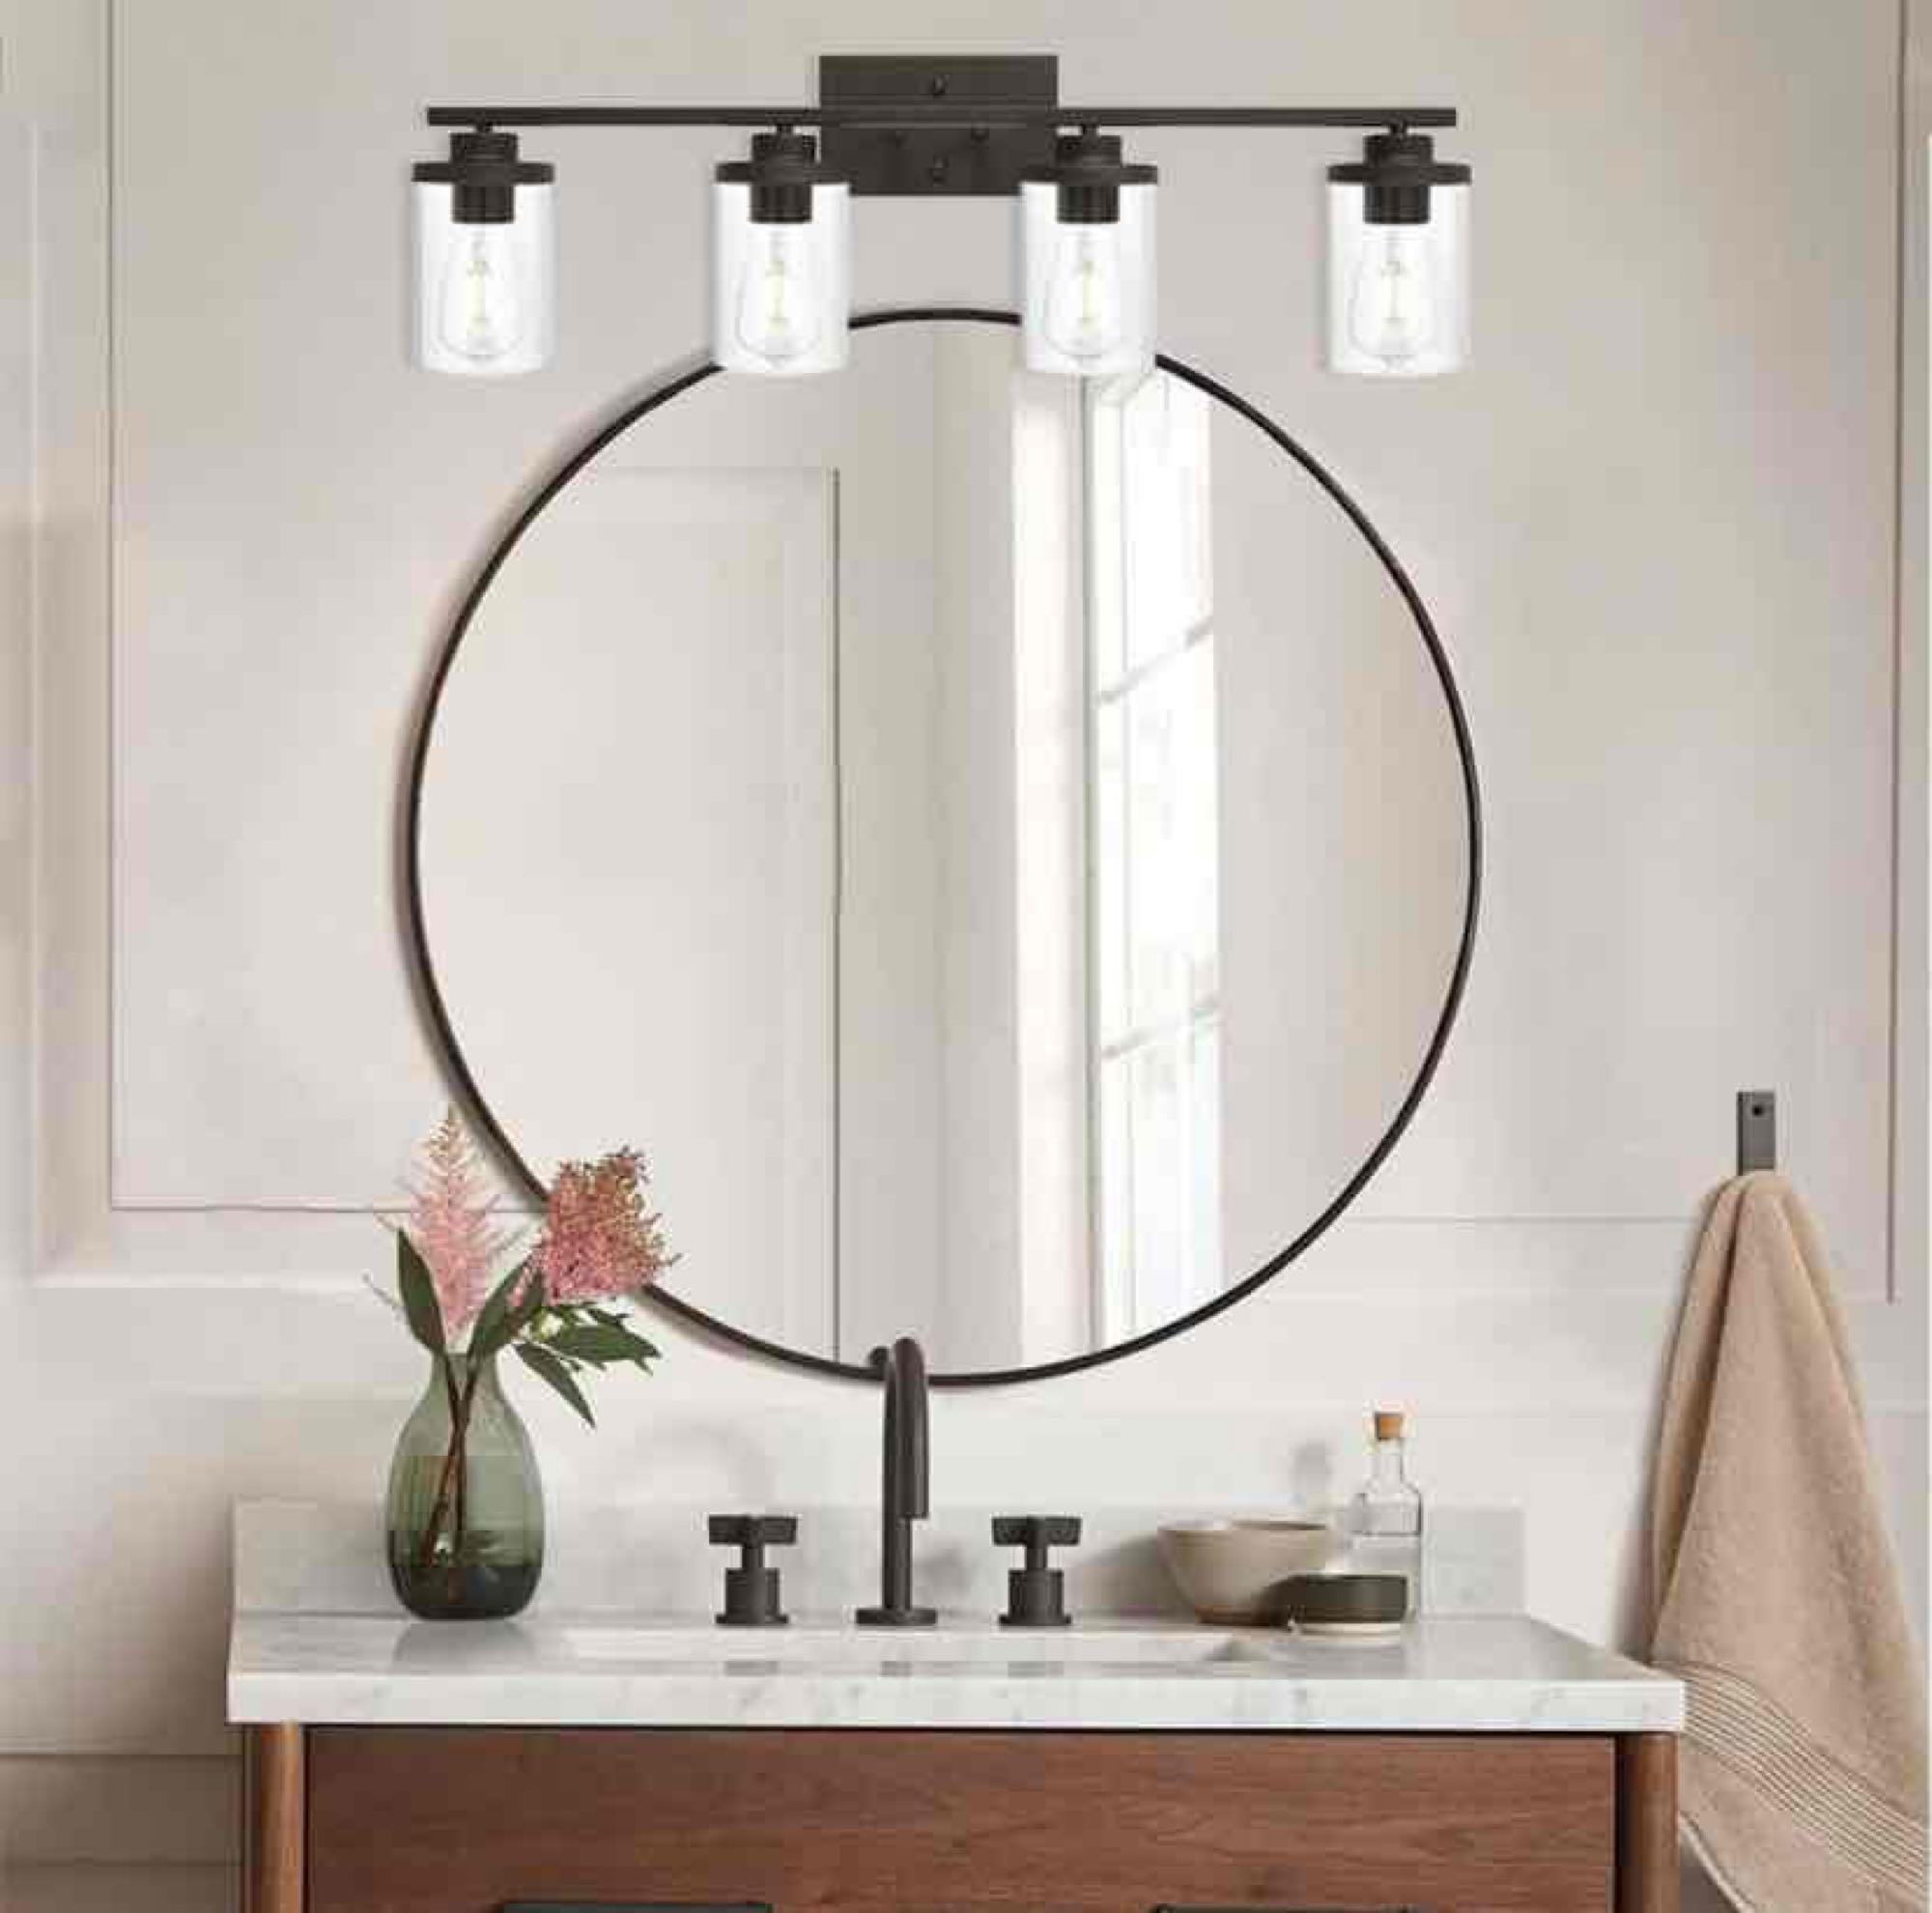 QueeuQ Bathroom Vanity Light Fixtures 4-Light